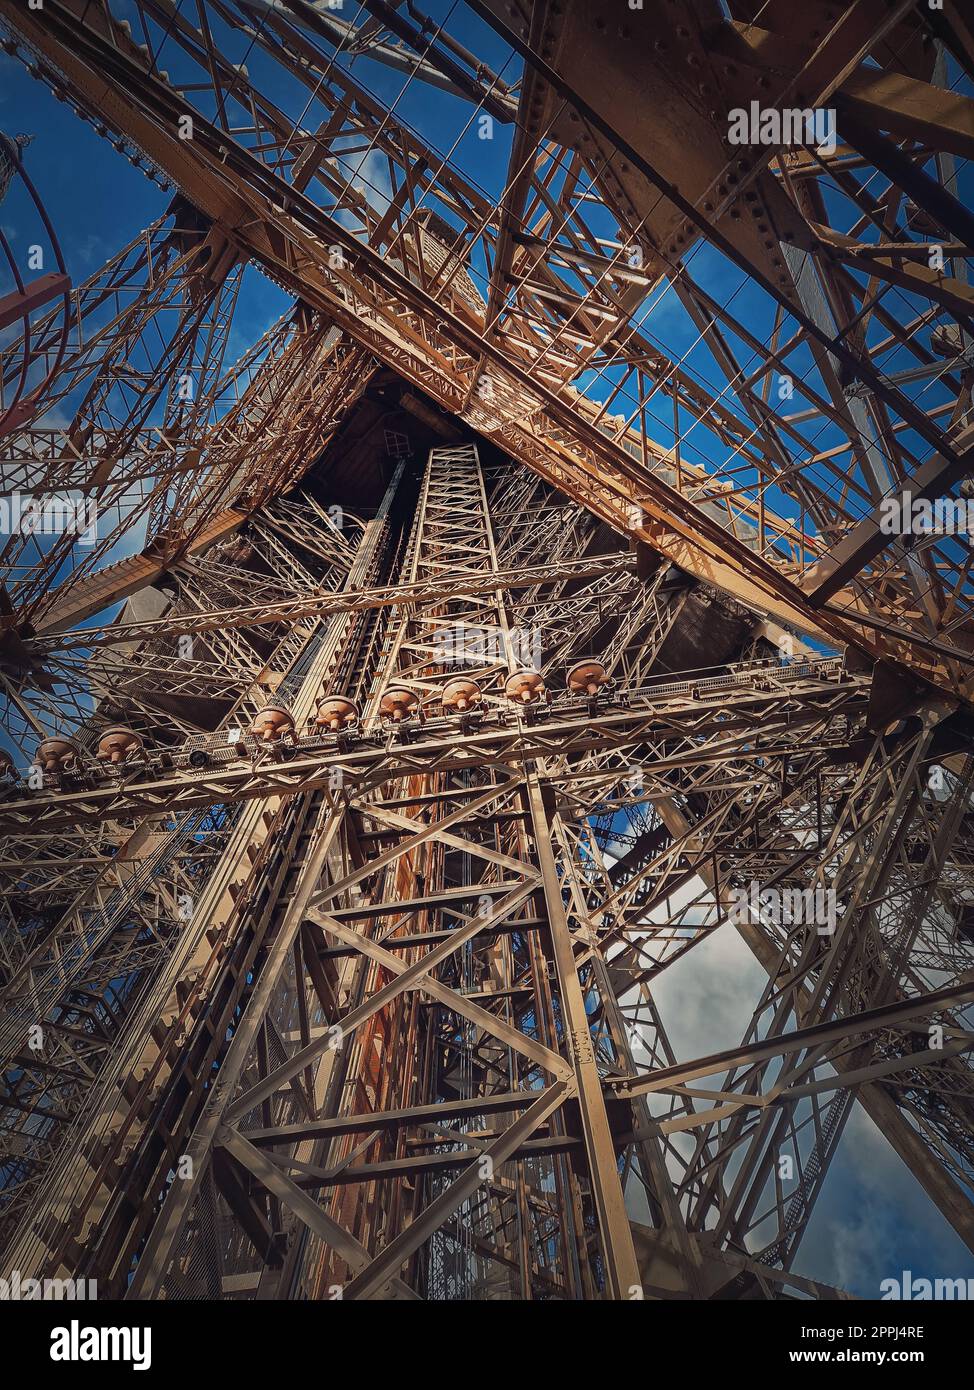 Dettagli di architettura della Torre Eiffel Parigi, Francia. Sotto la struttura metallica, elementi in acciaio con forme geometriche diverse Foto Stock